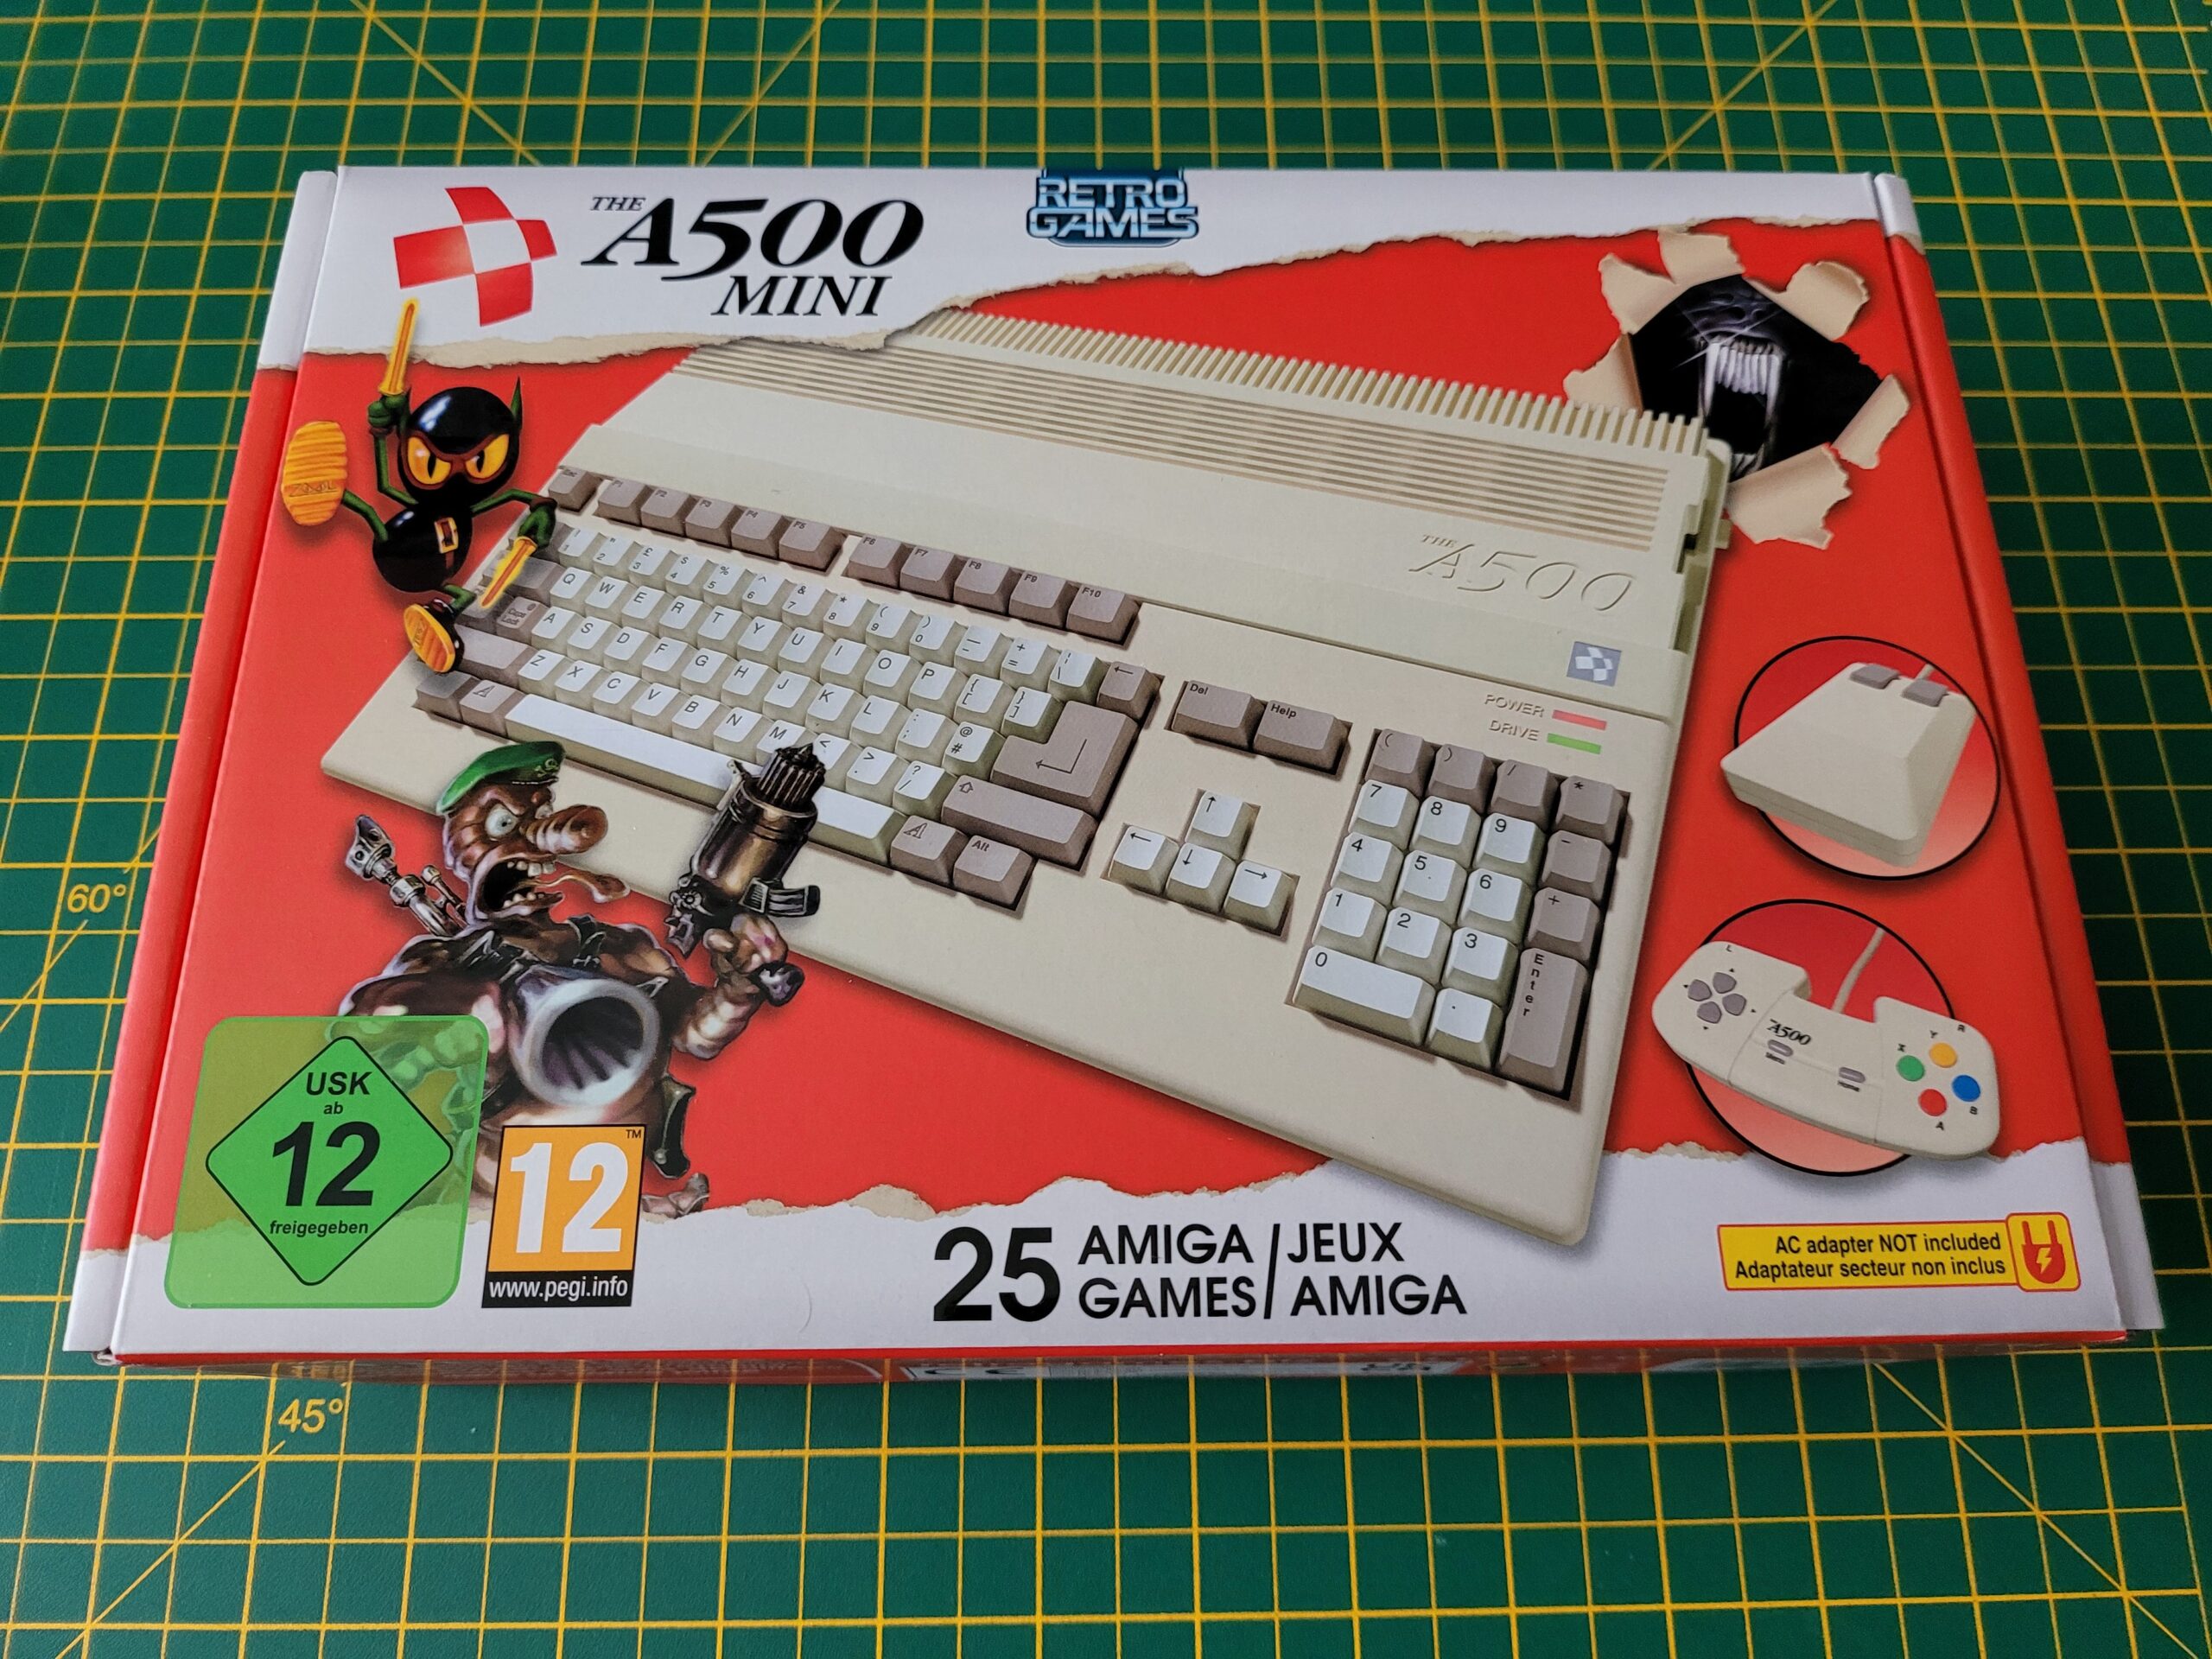 An Amiga 500 Mini is on the way